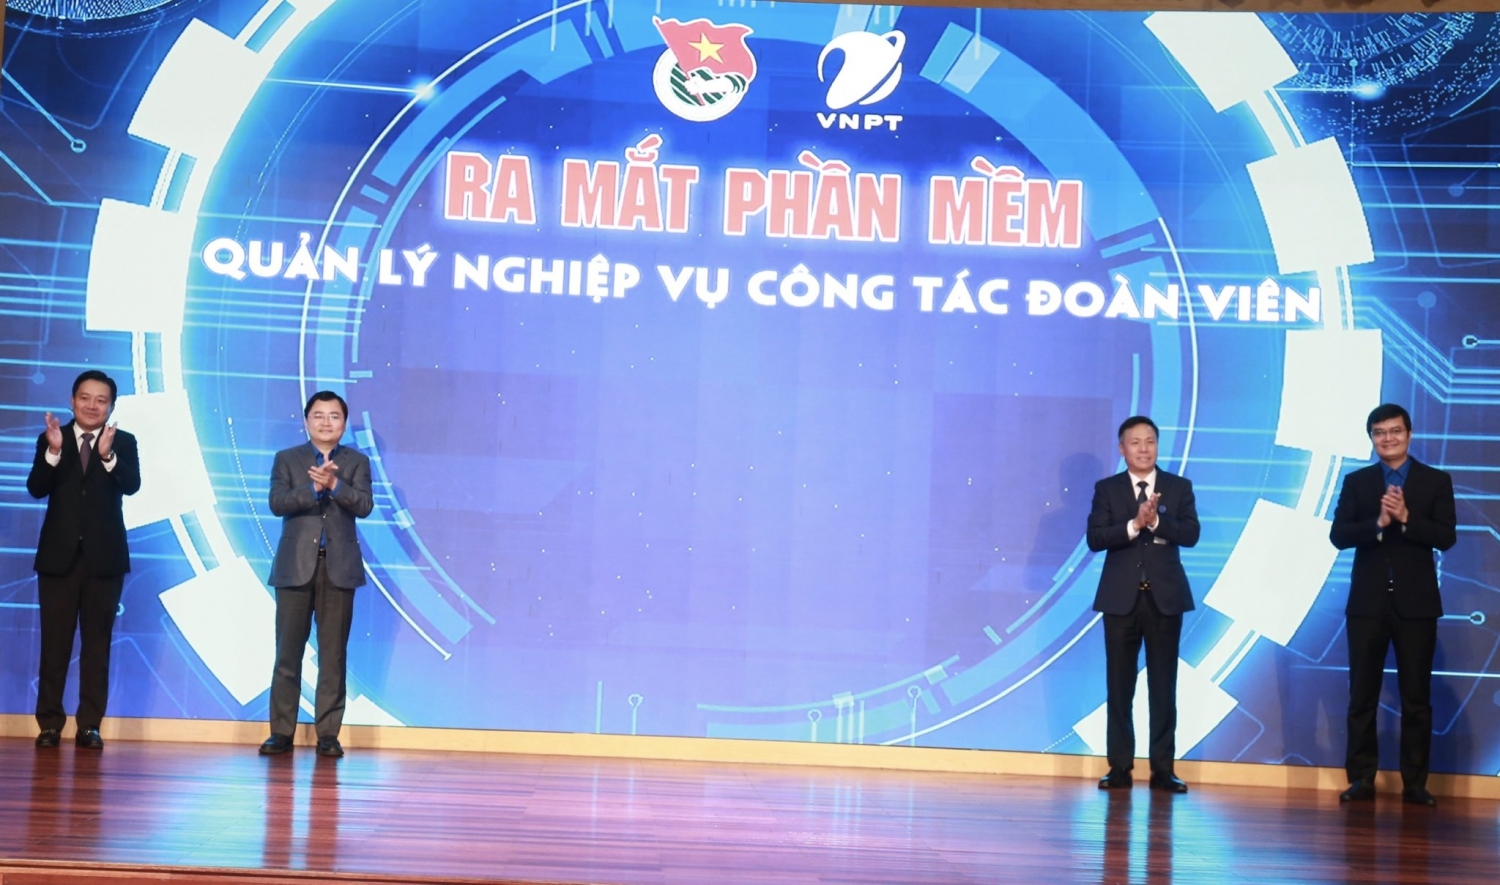 Các đồng chí Lãnh đạo Trung ương Đoàn TNCS Hồ Chí Minh và Tập đoàn Bưu Chính viễn thông Việt Nam - VNPT thực hiện nghi thức ra mắt phần mềm.